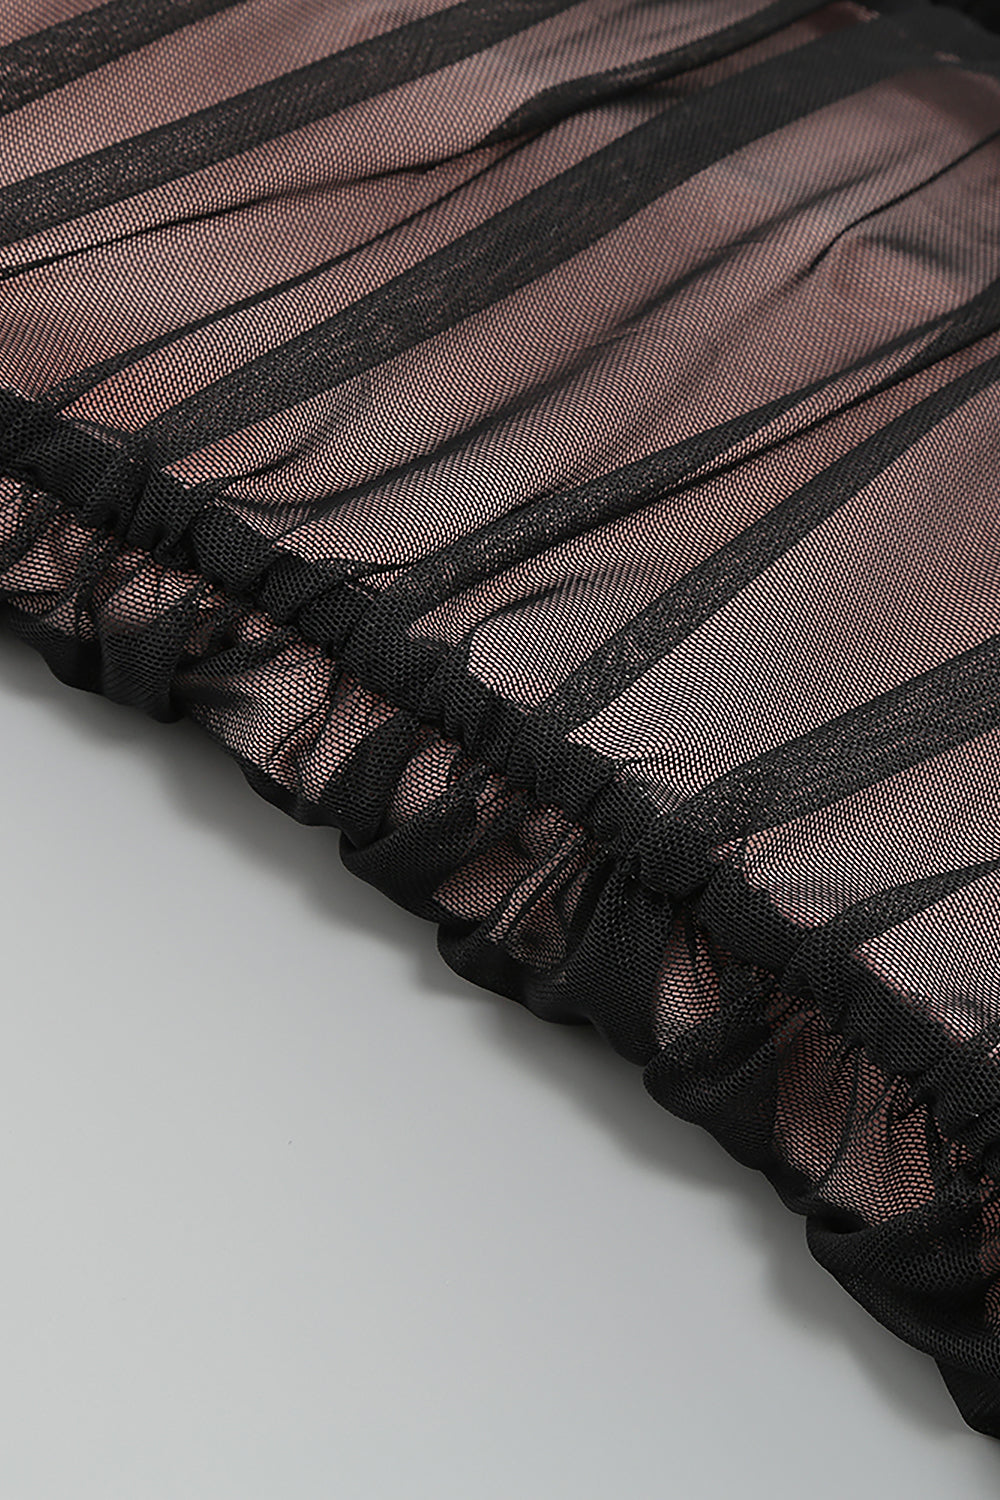 Robe midi moulante plissée sans bretelles en maille noire